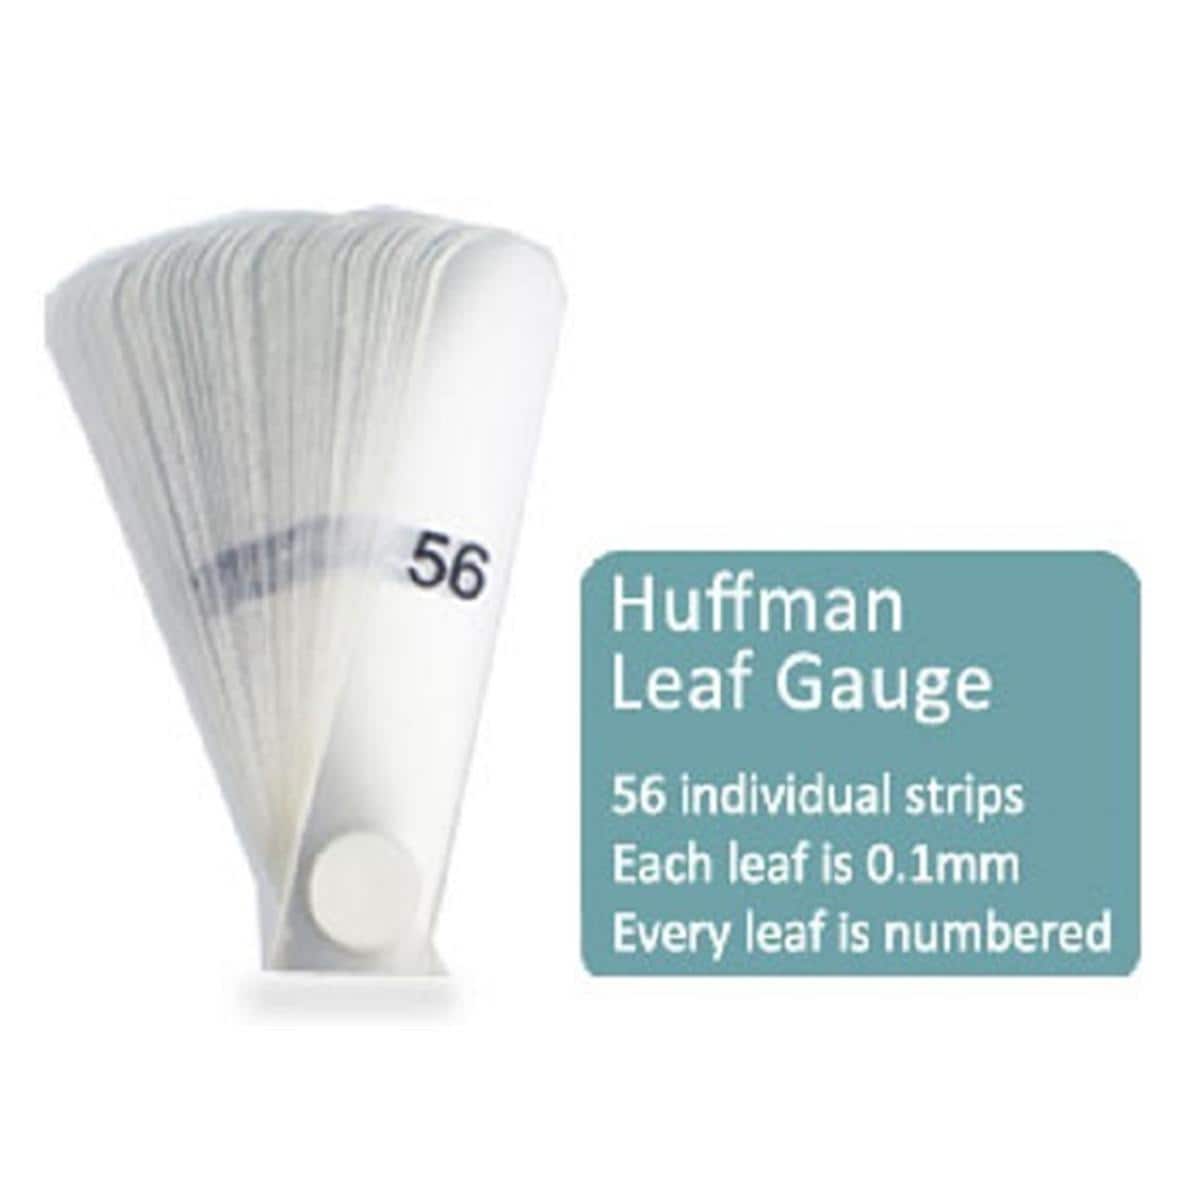 Leaf Gauge Huffman - 0-9390, per stuk